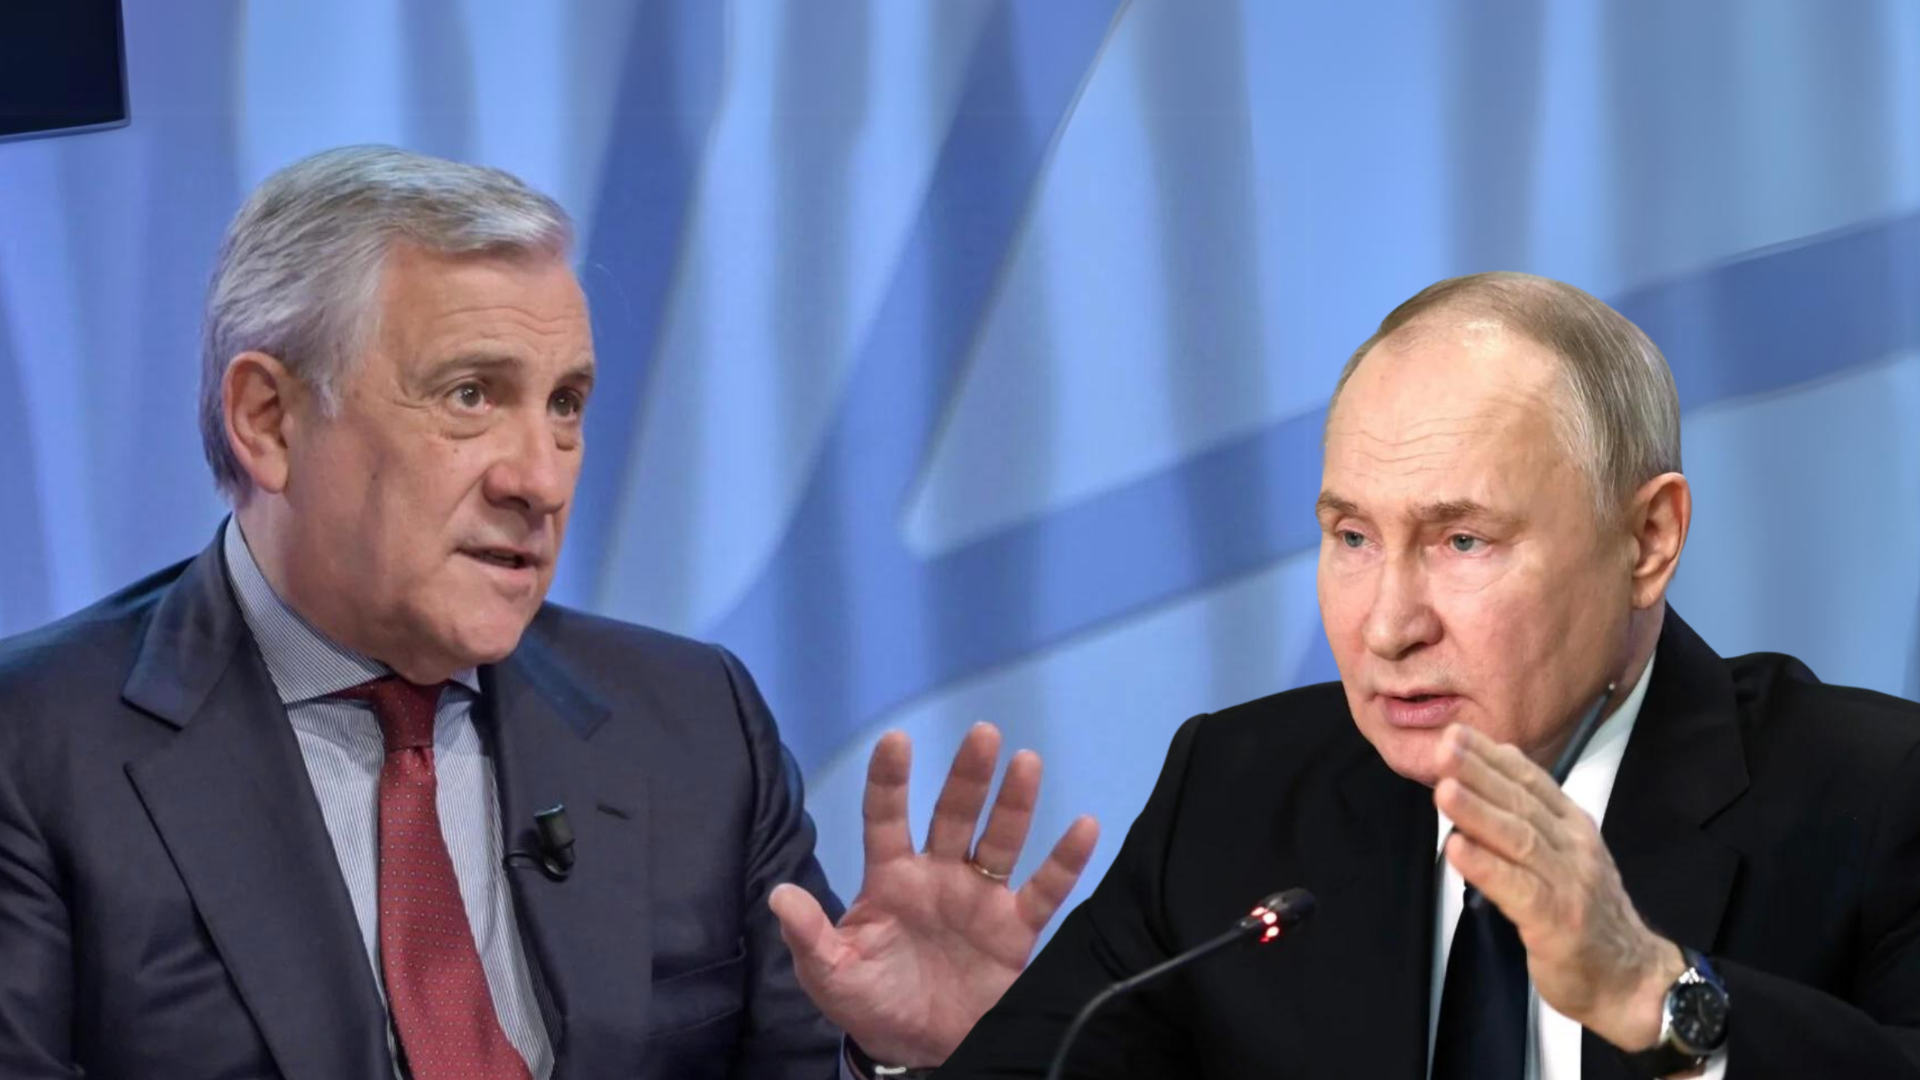 Putin nazionalizza da tempo aziende europee in Russia. Ultima l’Ariston, Italia. Tajani, Ministro degli Esteri: “Non ce lo aspettavamo”. ARIDATECE GIGGINO